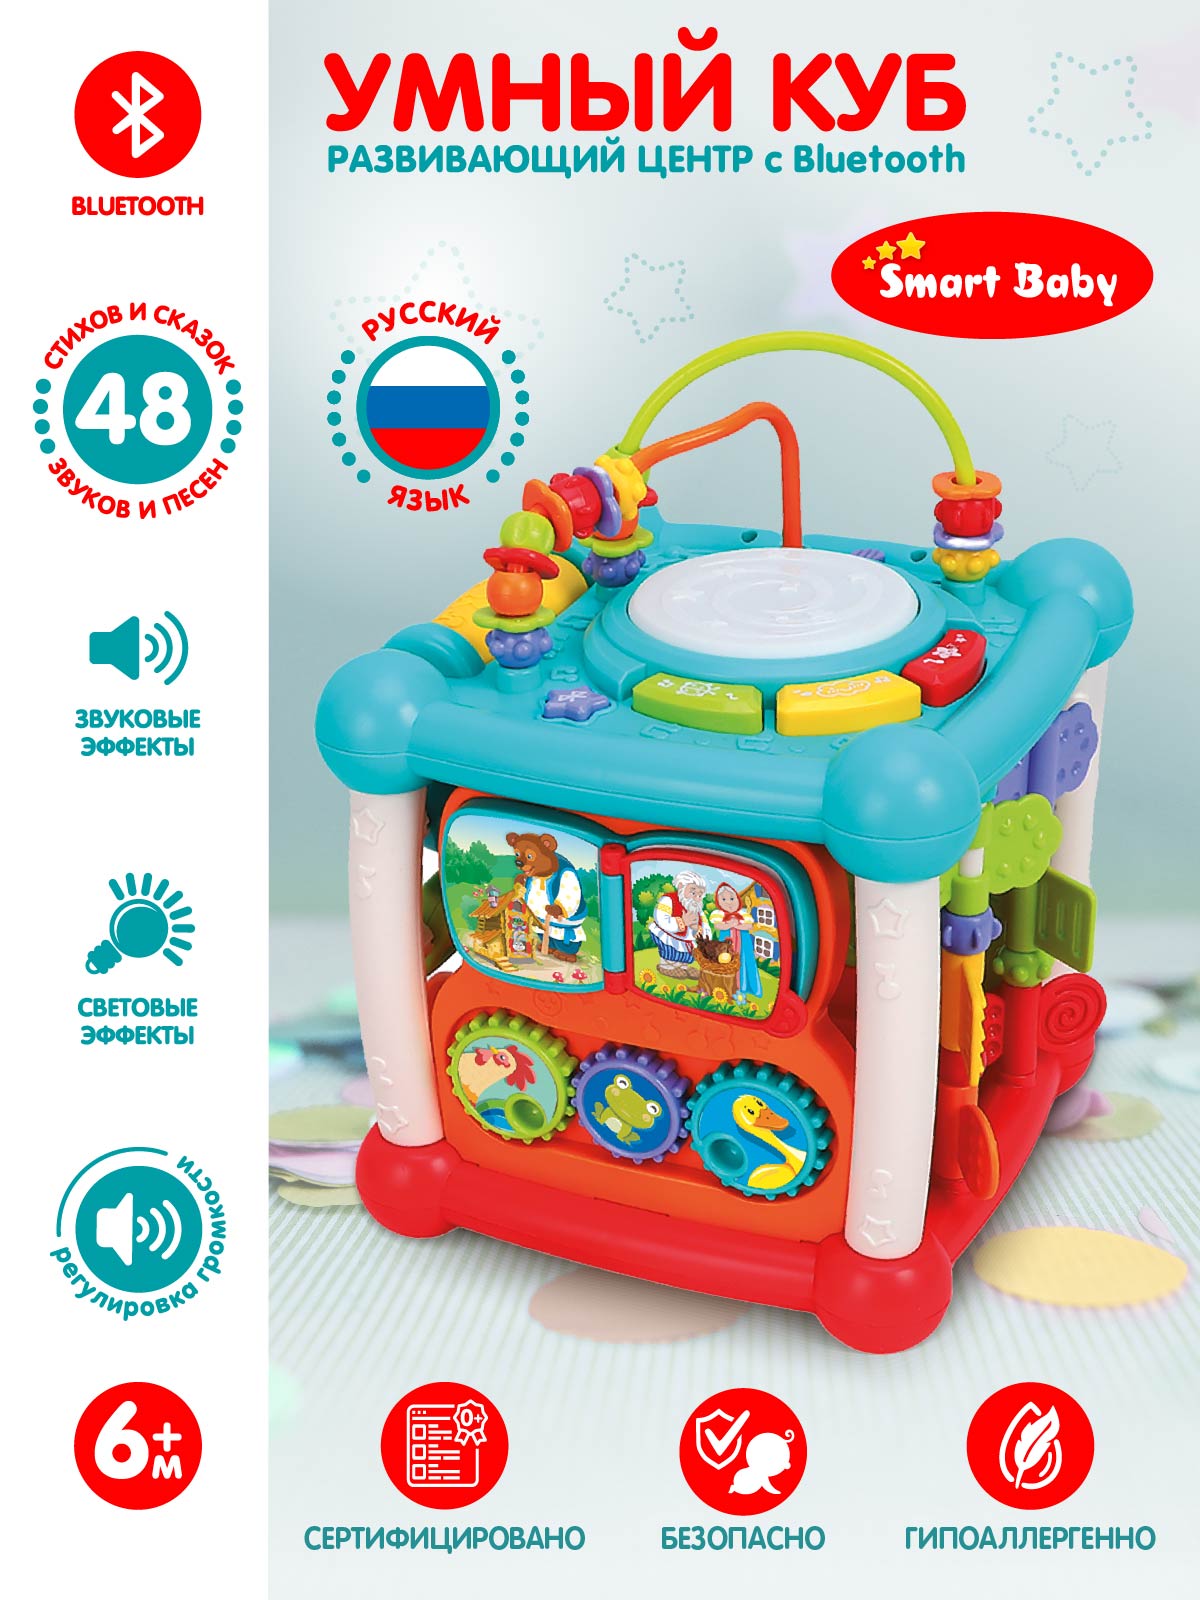 Развивающая игрушка ТМ Smart Baby, музыкальный куб с Bluetooth, звук, свет, JB0334054 развивающая игрушка shantou стойка abero львенок свет звук с сортером